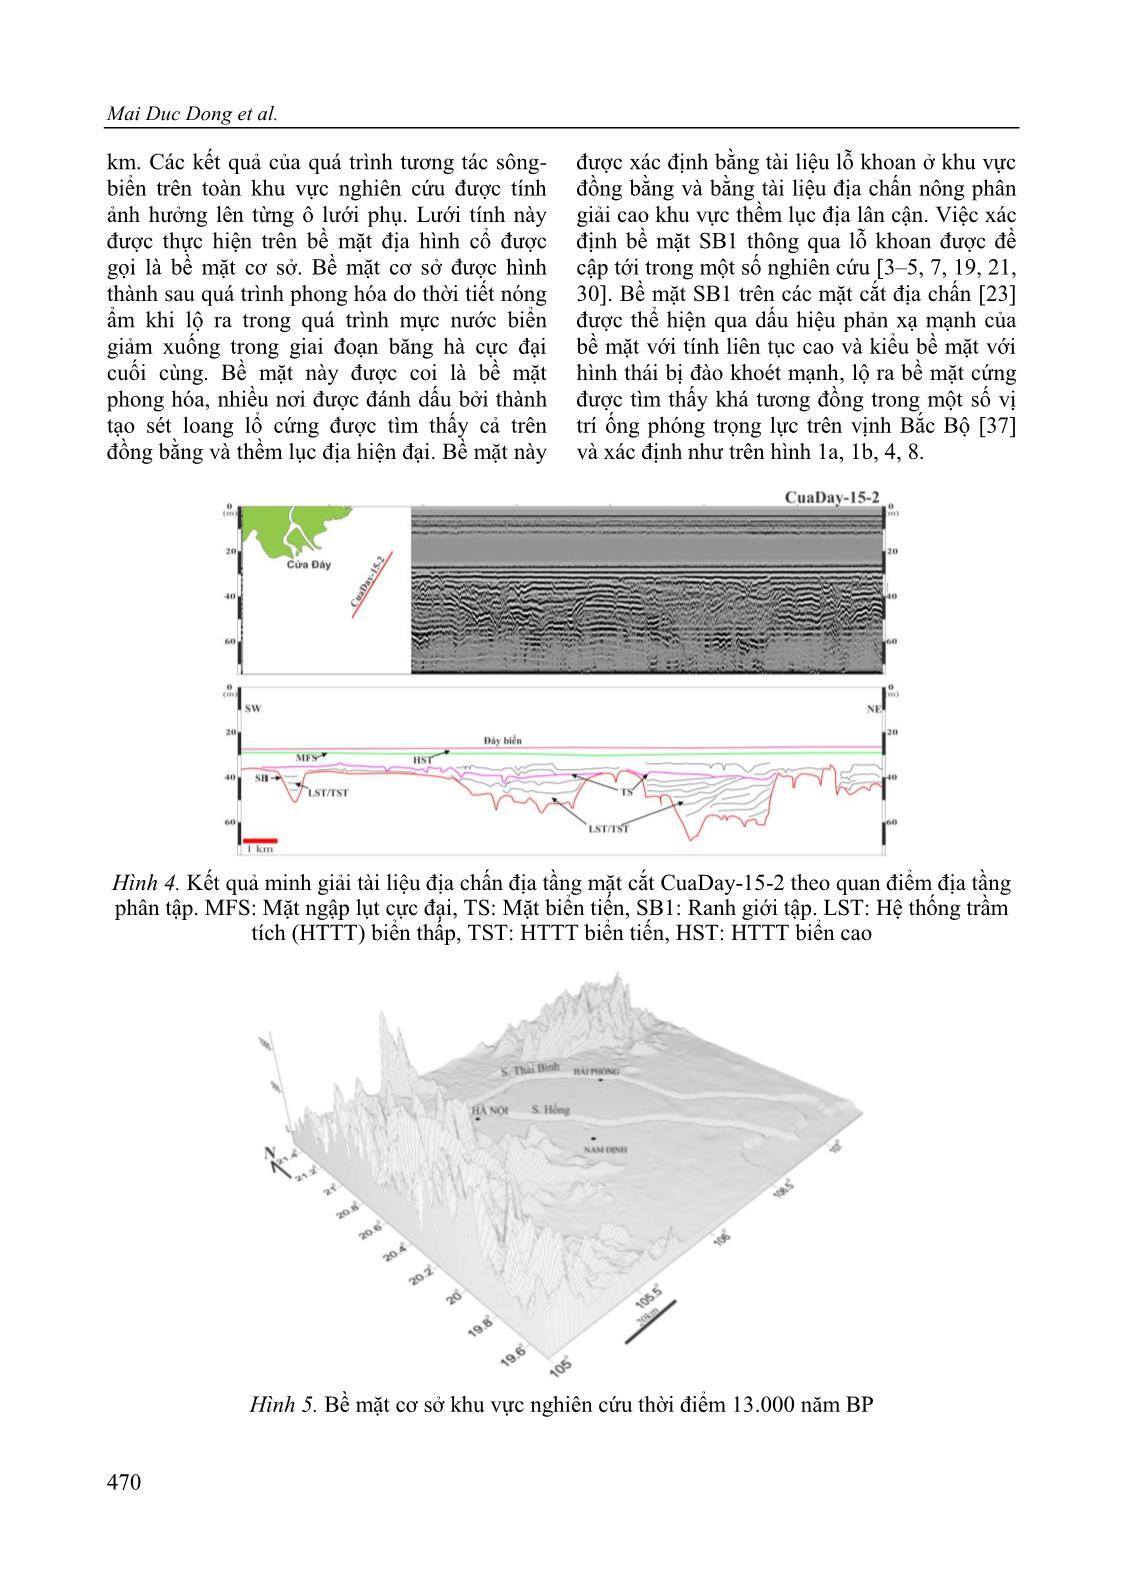 Ứng dụng mô hình số Simclast nghiên cứu sự phát triển của châu thổ sông Hồng giai đoạn Pleistocen muộn-Holocen trang 8